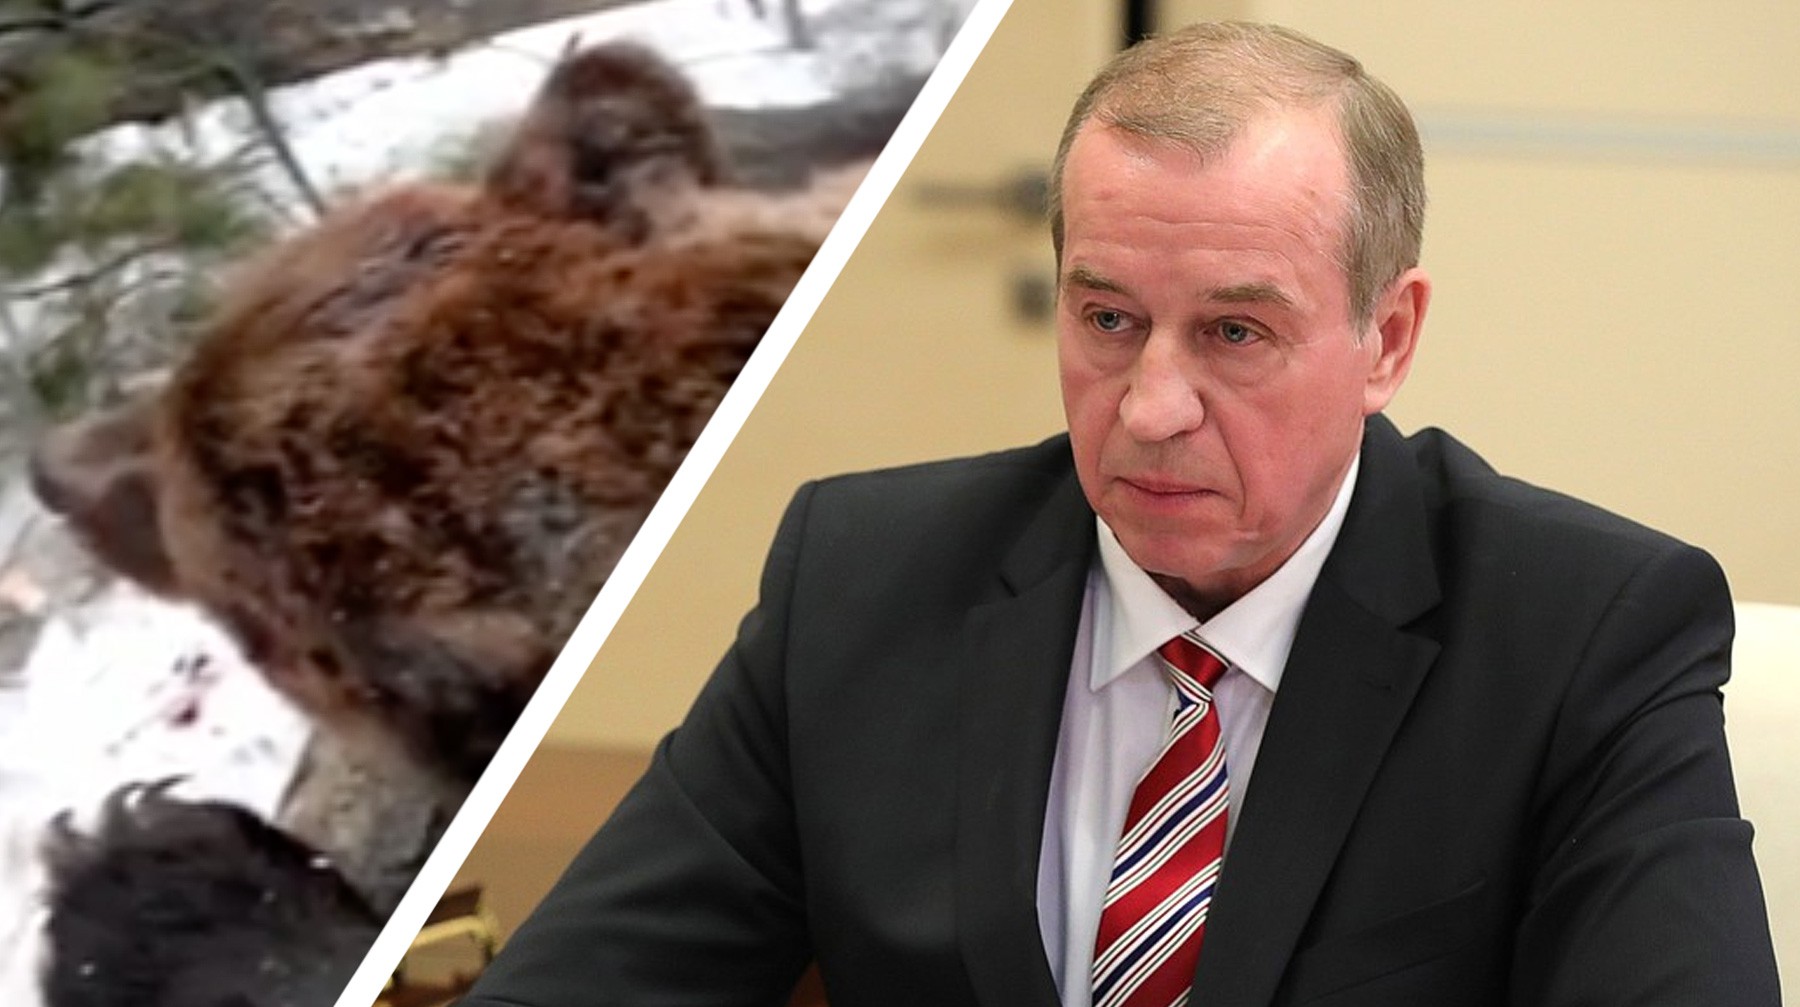 Dailystorm - Зюганов назвал информационным бандитизмом сюжеты про убийство медведя иркутским губернатором